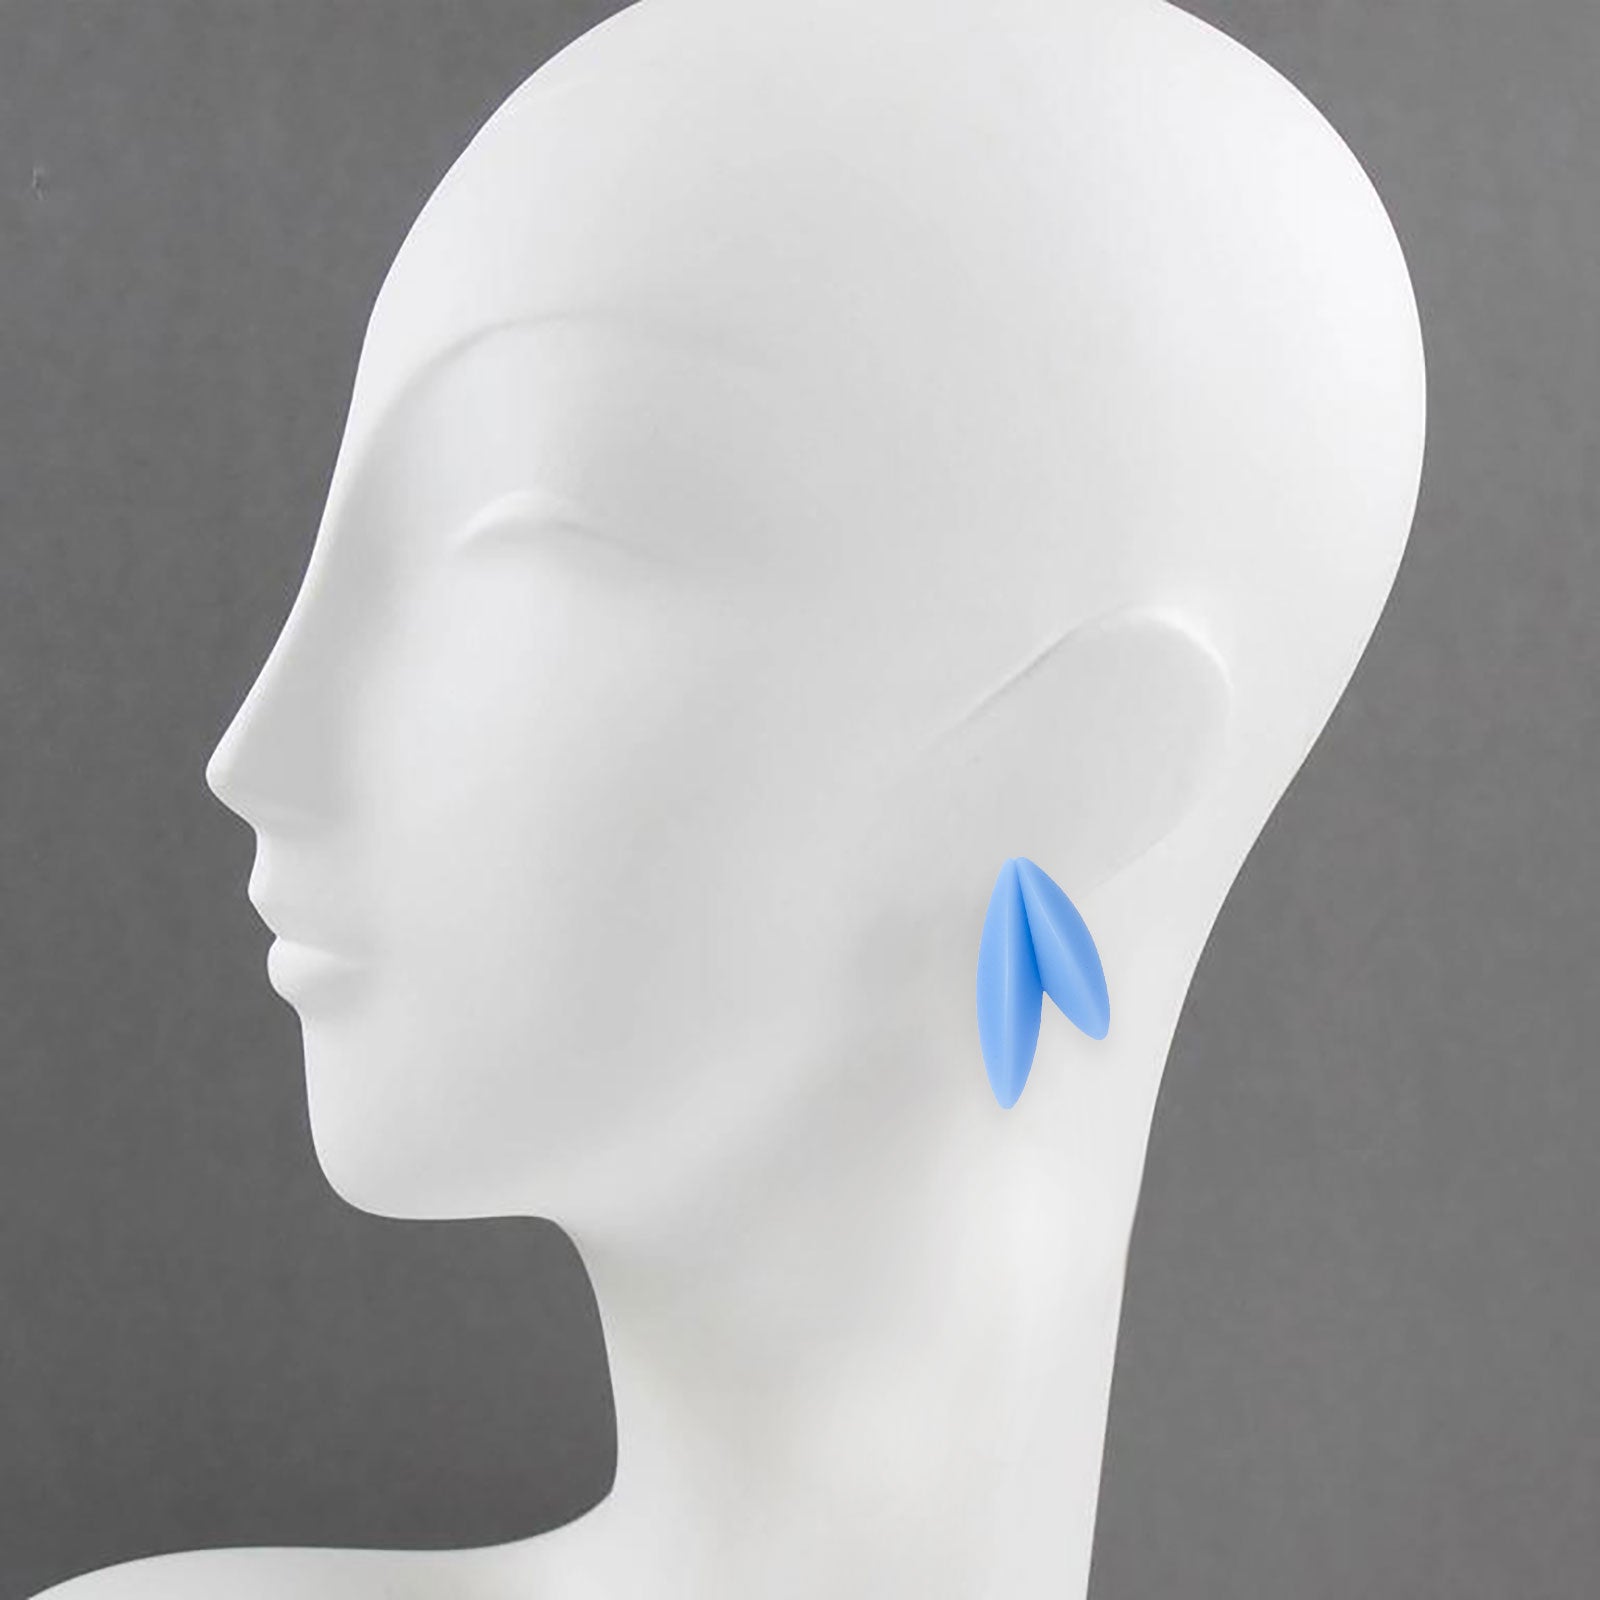 Twin-LEAVES earrings, cornflower blue